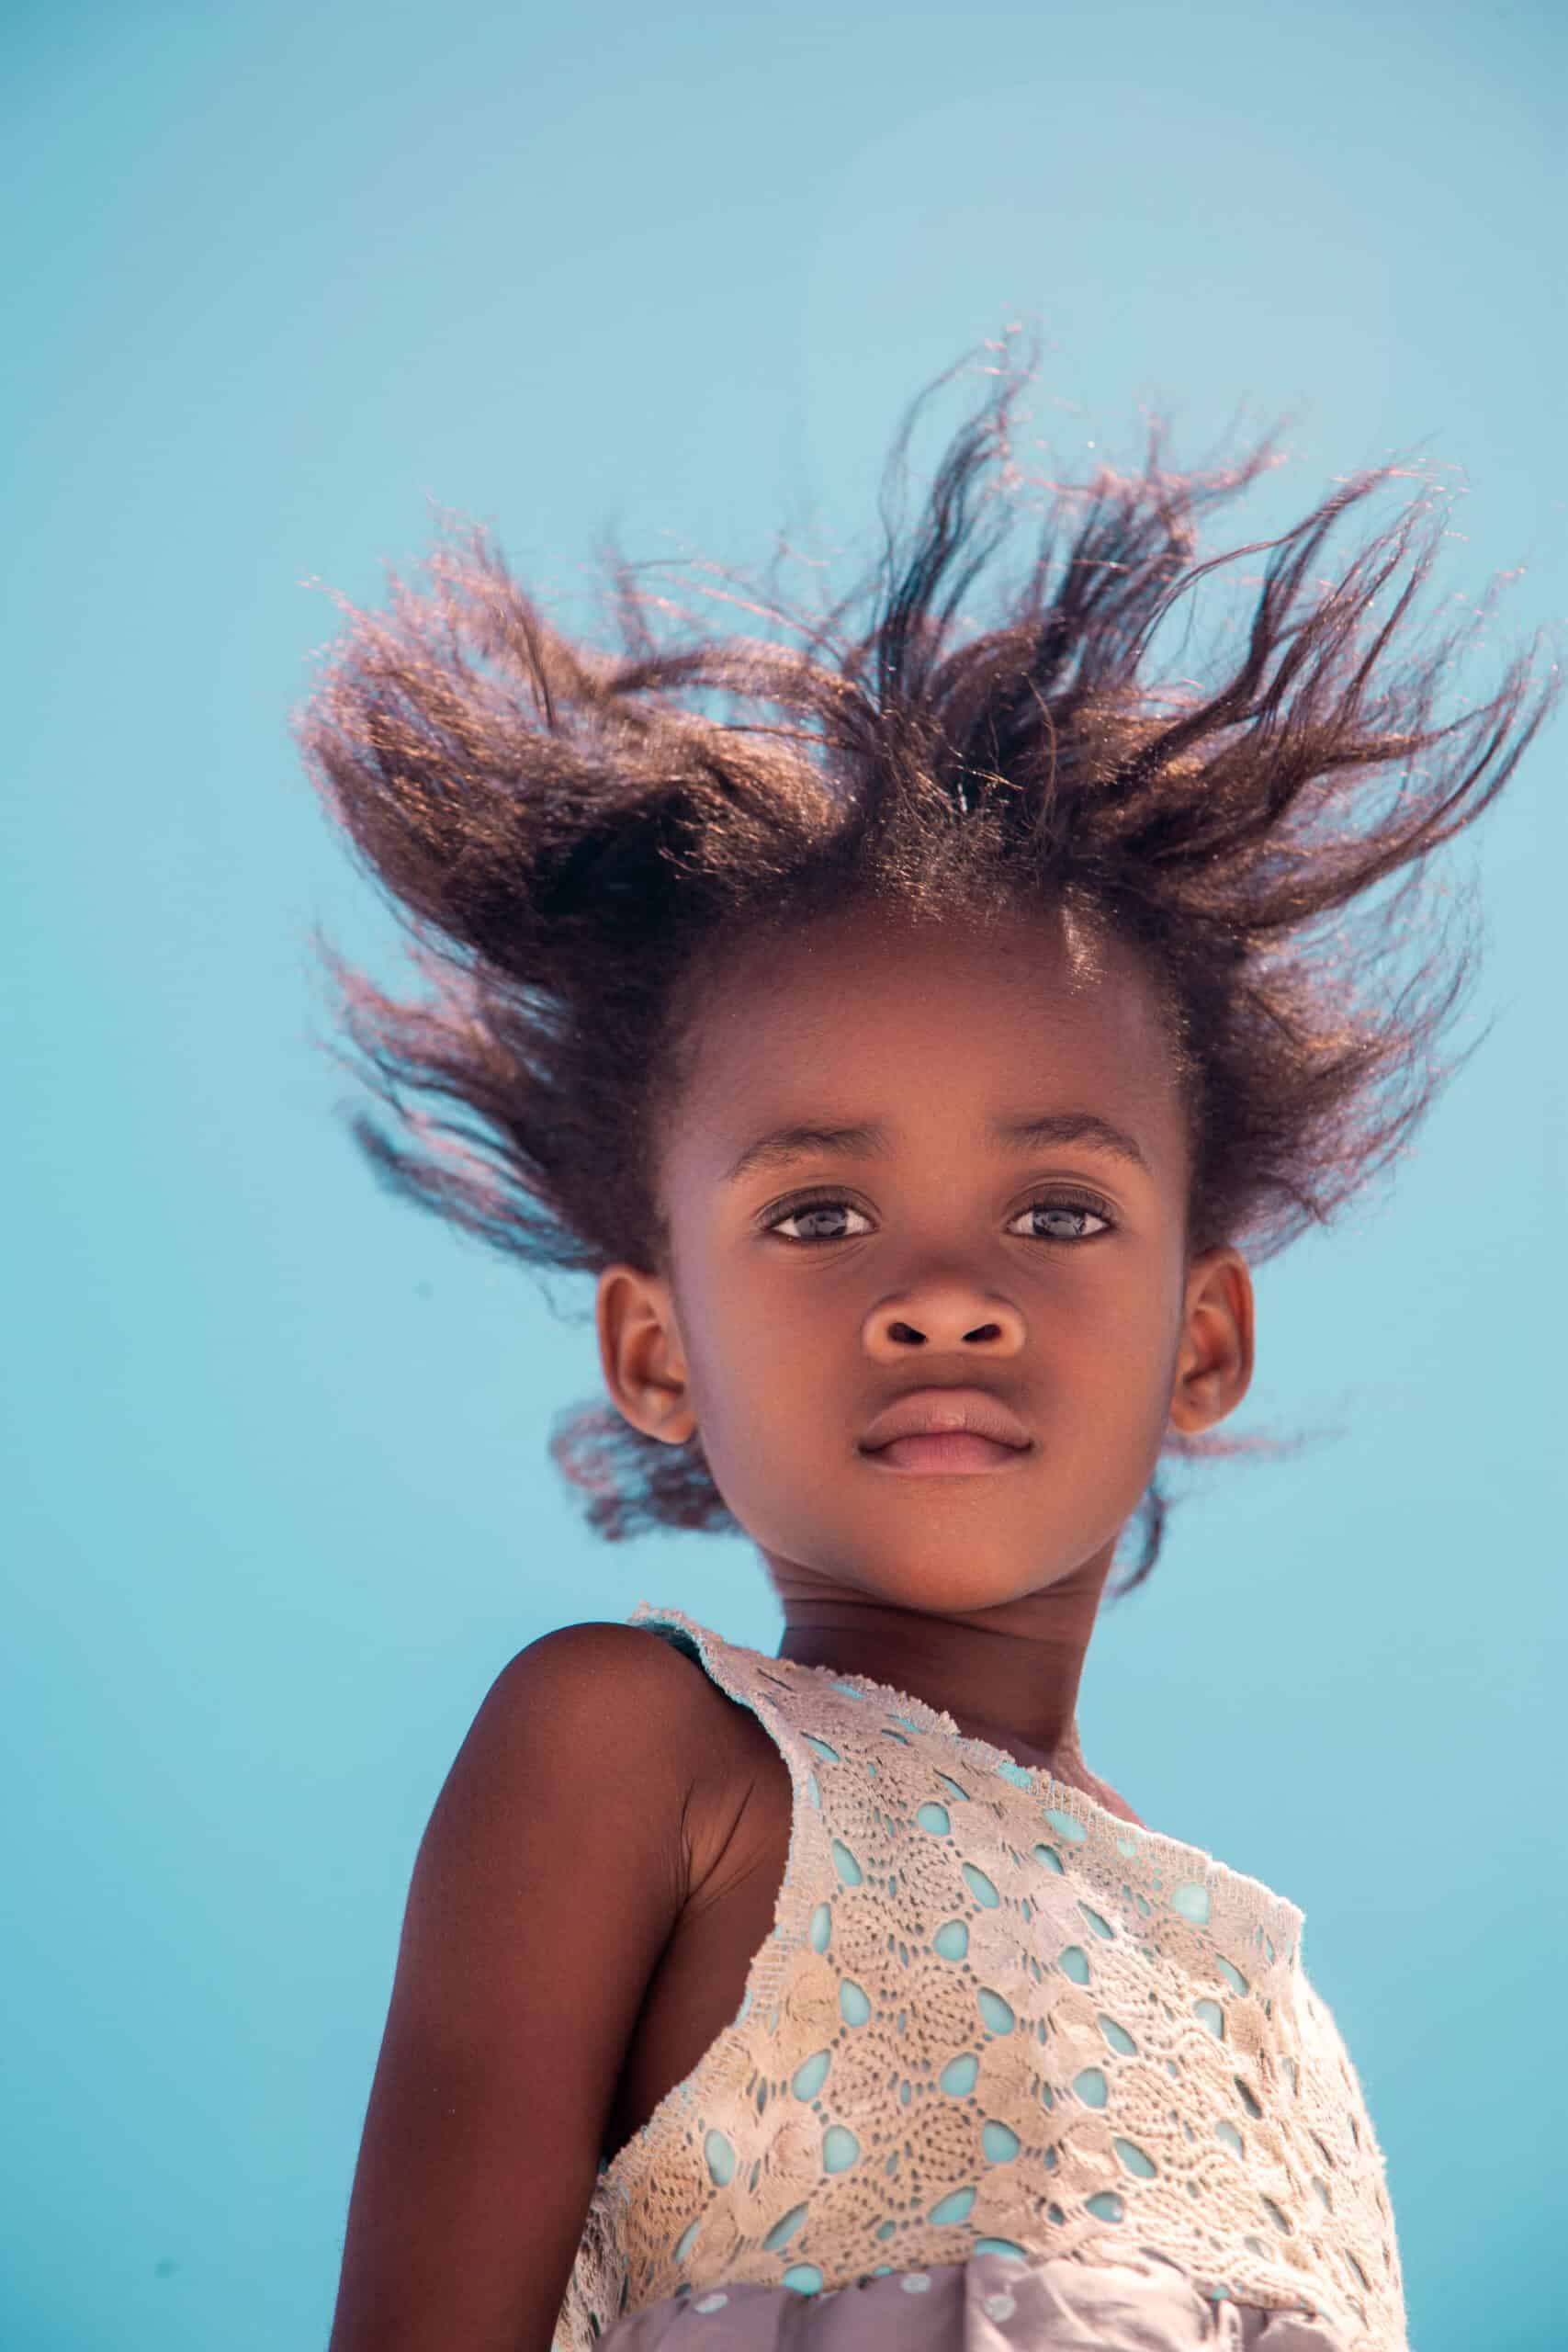 Ein junges Mädchen mit vom Wind zerzaustem Haar steht vor einem klaren blauen Himmel, trägt ein weißes Spitzenkleid und blickt nachdenklich in die Ferne. © Fotografie Tomas Rodriguez